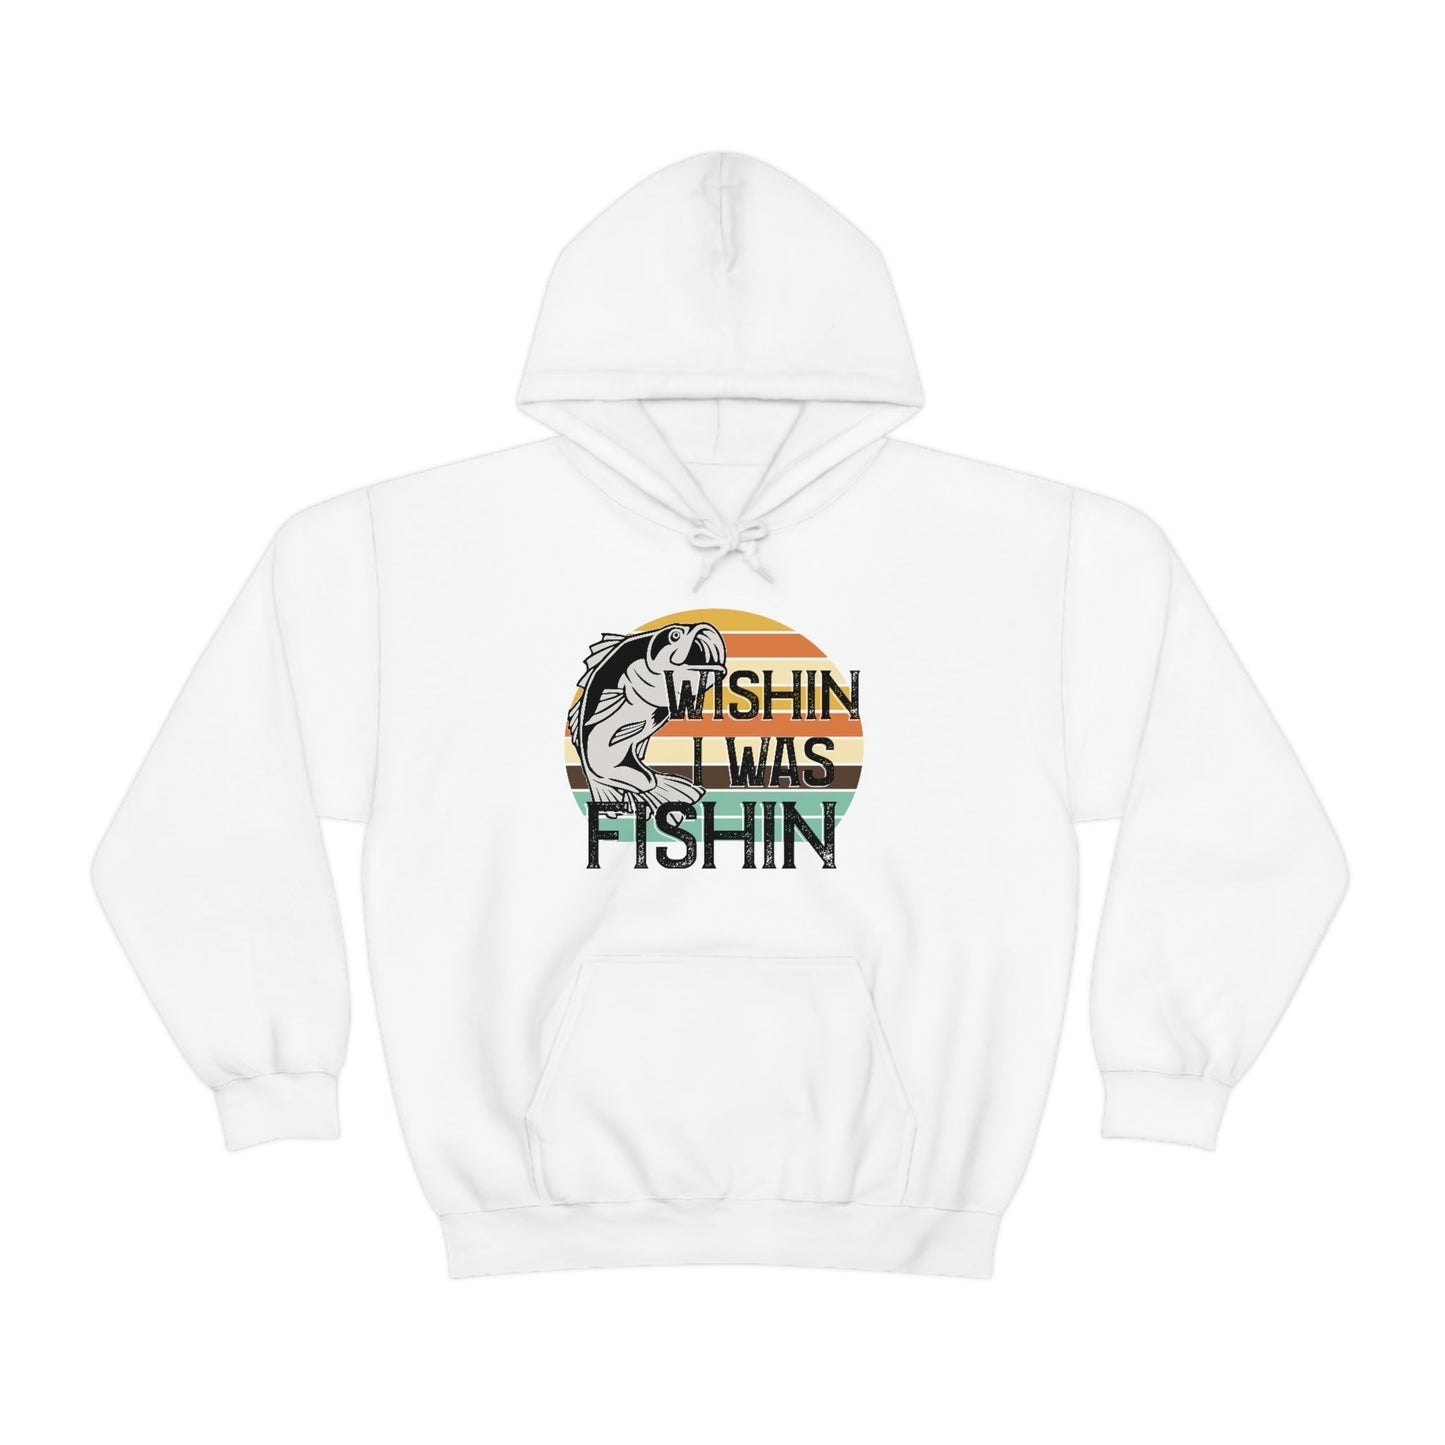 Wishin I was Fishin Hooded Sweatshirt